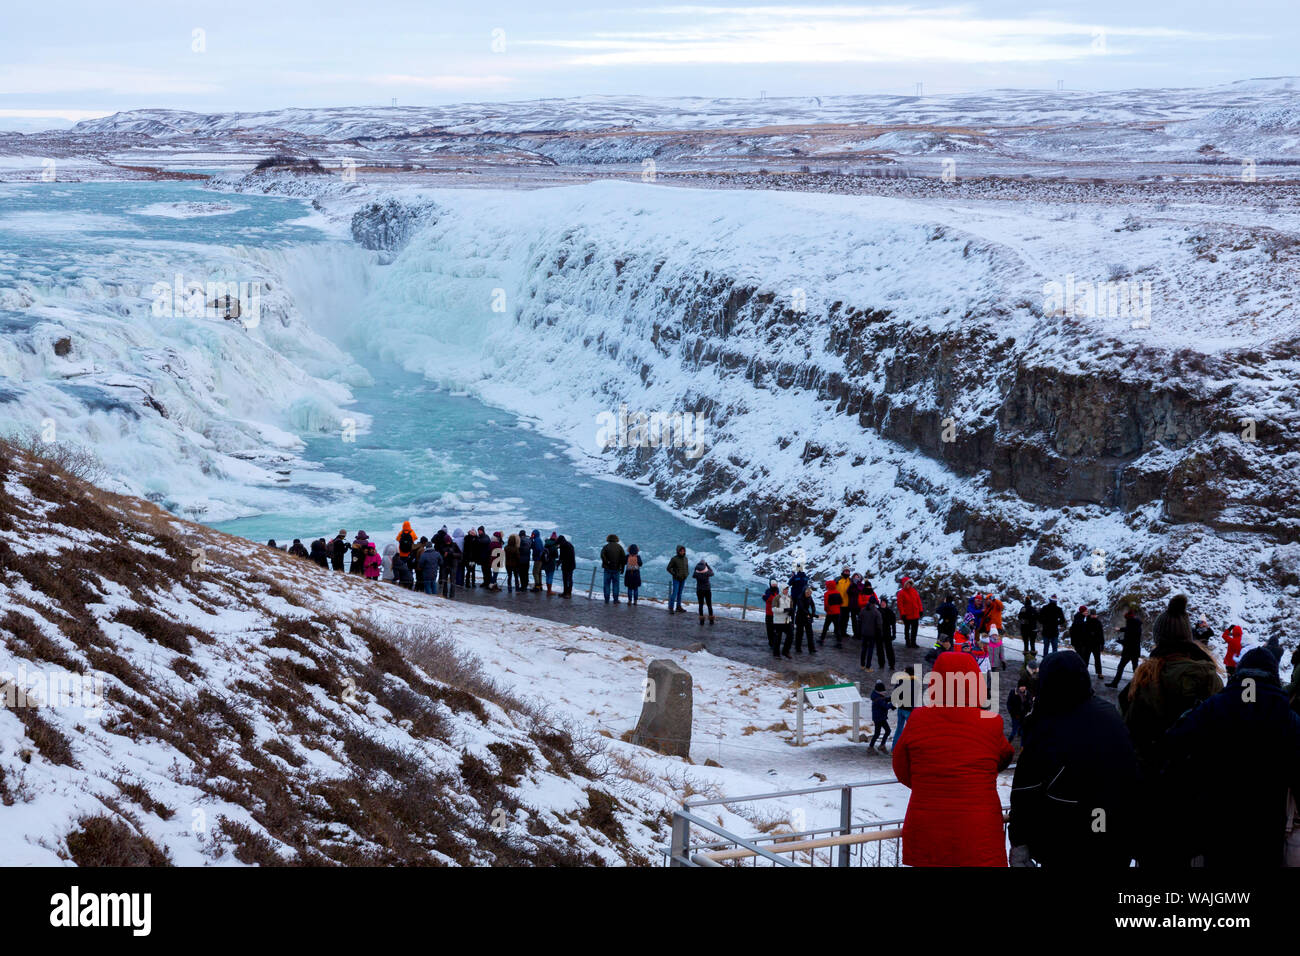 L'Islande, cercle d'or, Gullfoss. Les touristes à la cascade de Gullfoss en hiver. En tant que crédit : Wendy Kaveney Jaynes / Galerie / DanitaDelimont.com Banque D'Images